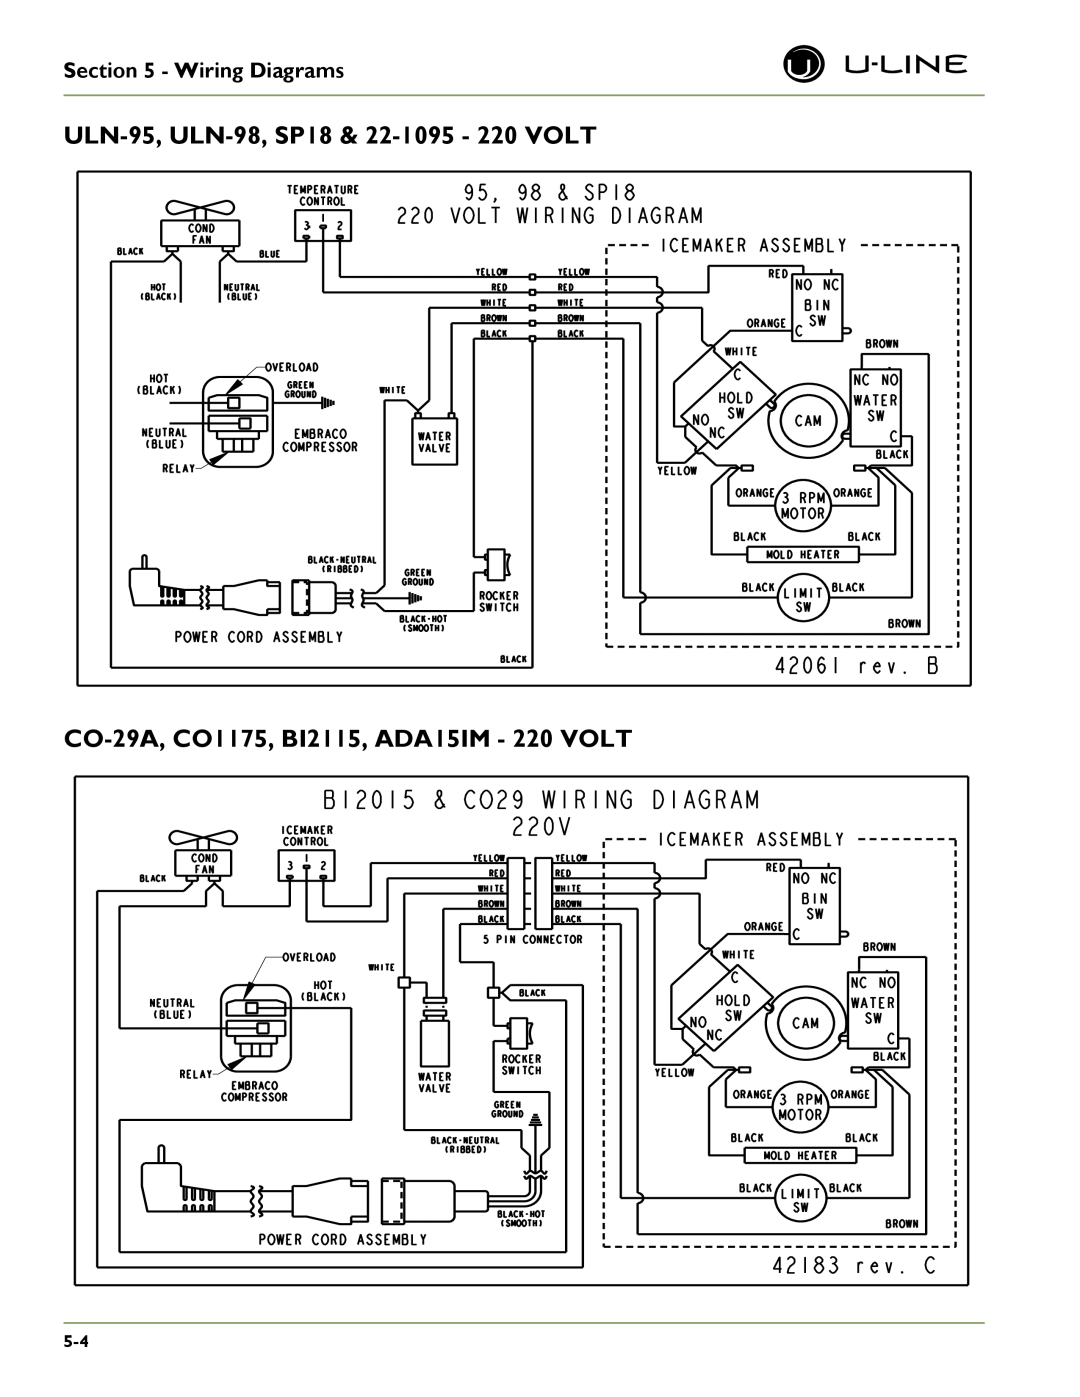 U-Line U-CO29F, SP 18 ULN-95, ULN-98,SP18 & 22-1095- 220 VOLT, CO-29A,CO1175, BI2115, ADA15IM - 220 VOLT, Wiring Diagrams 